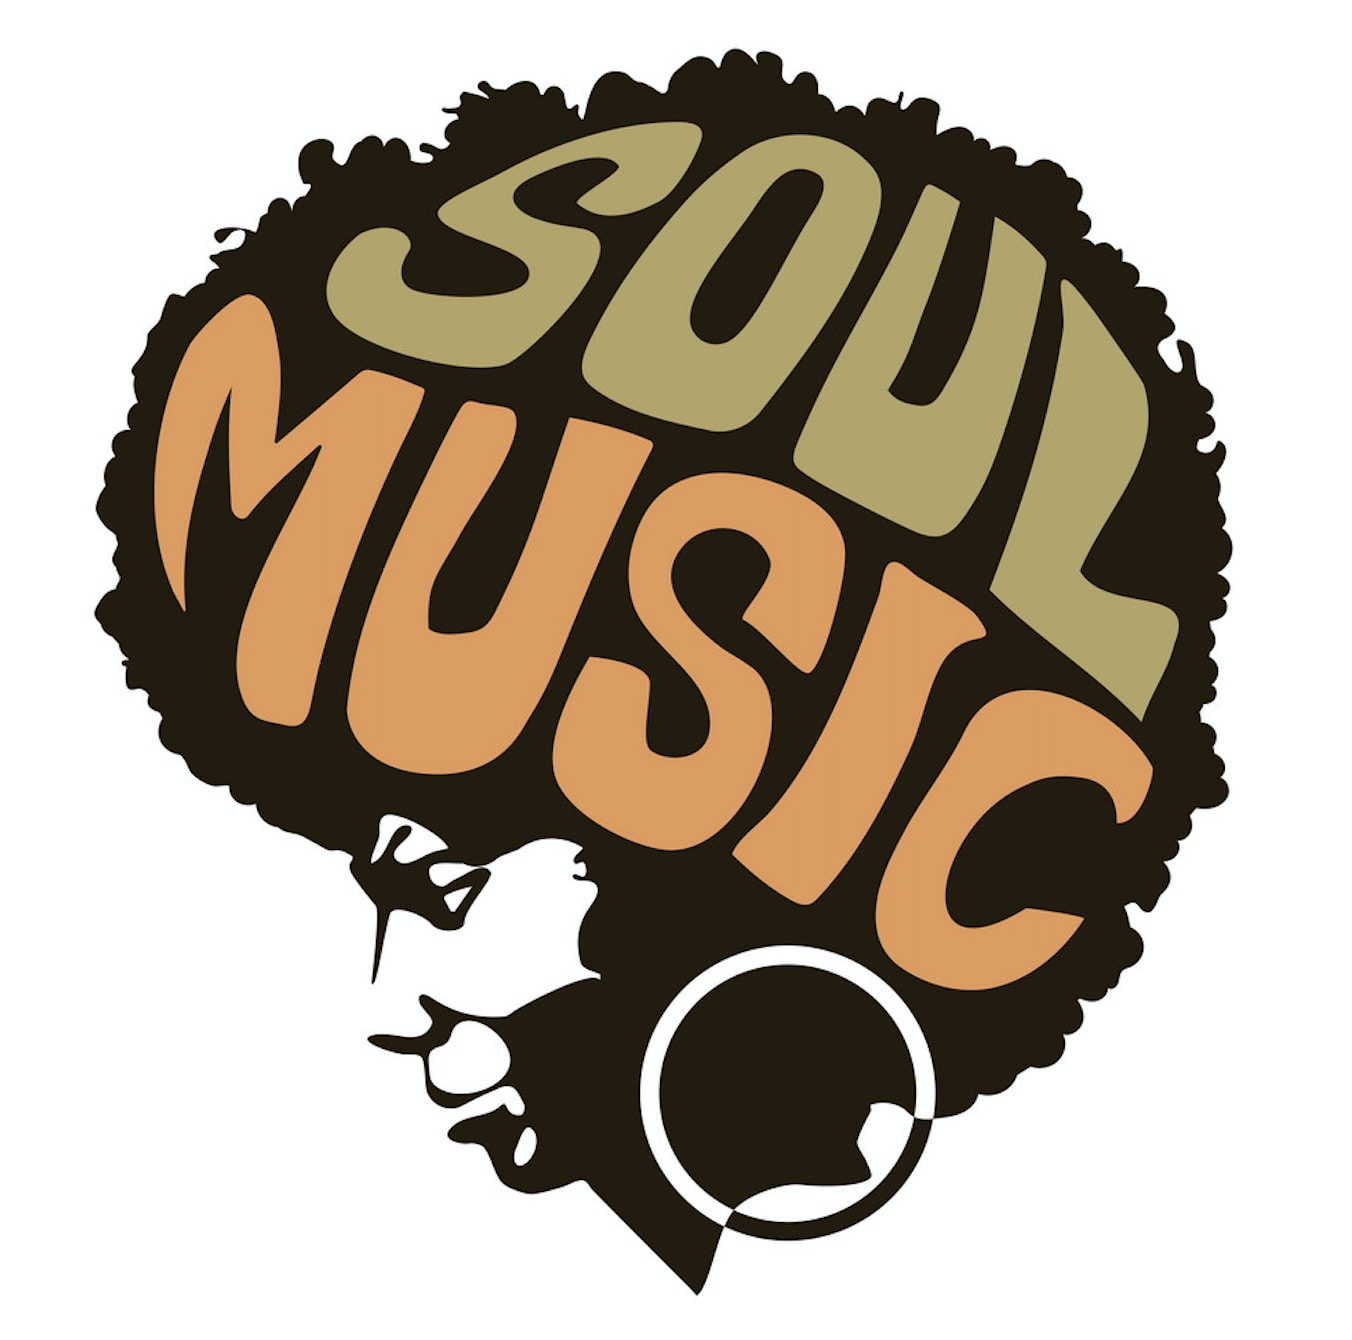 Стиле soul. Соул стиль музыки. Soul вектор. Иллюстрация соул музыки. Classic Soul Music Art.